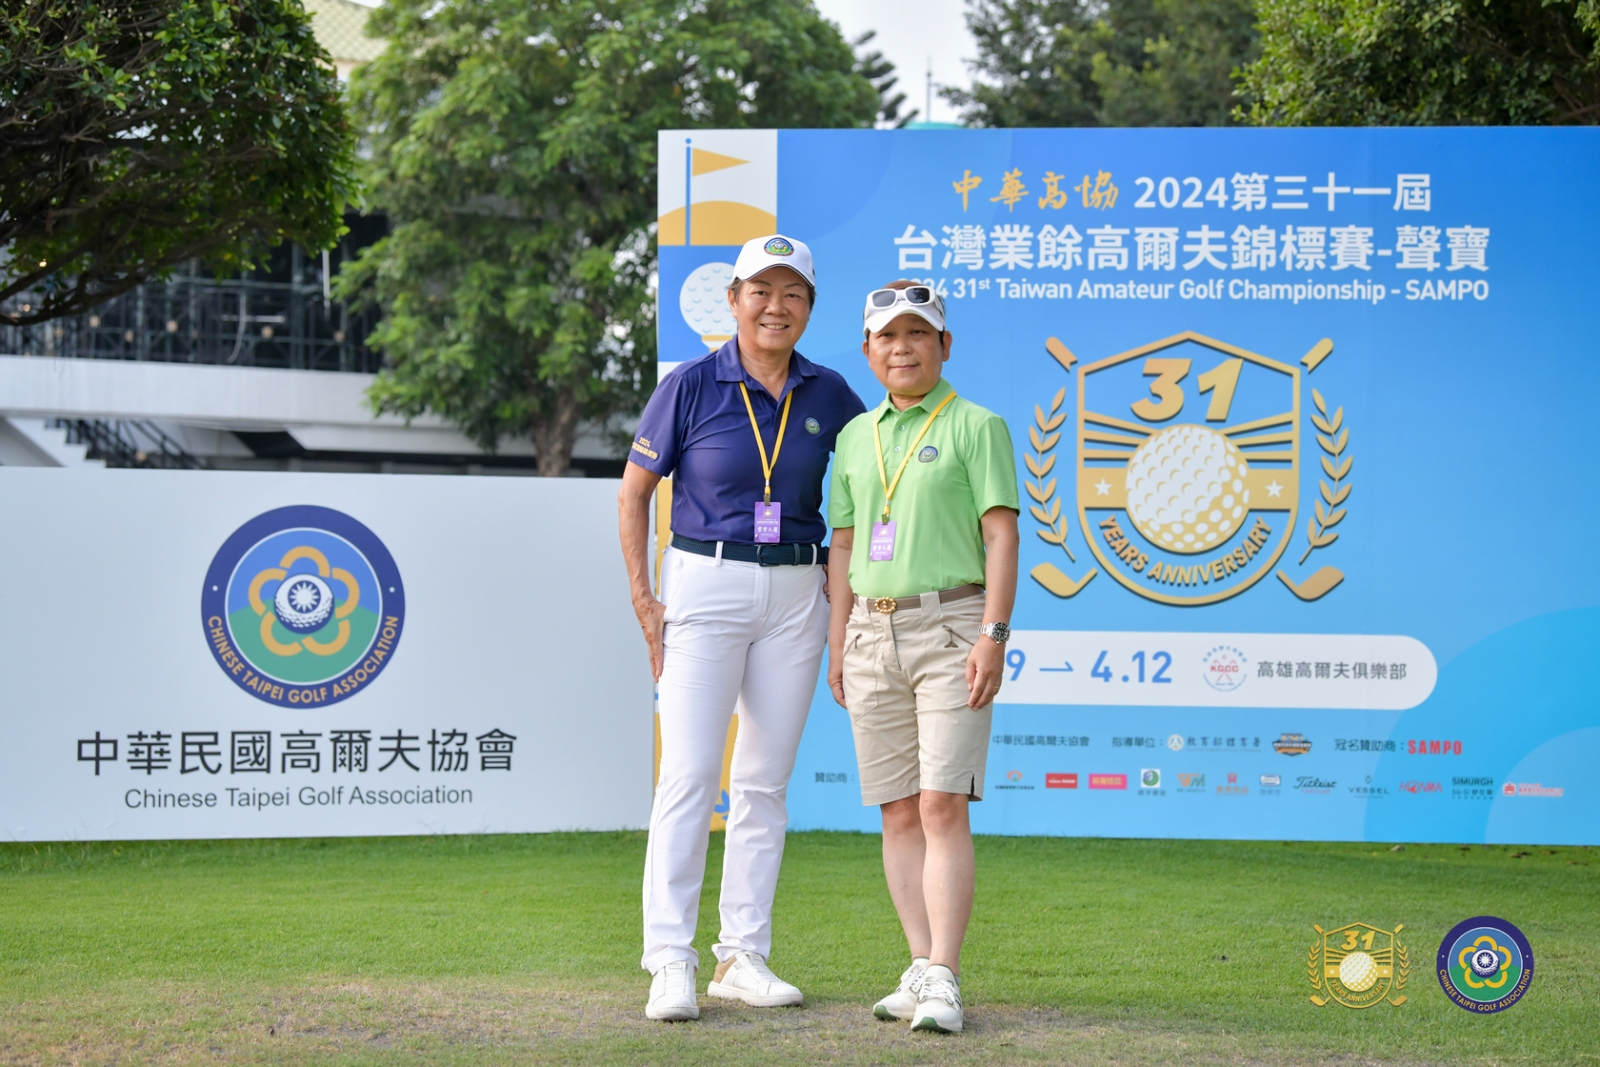 中華高協副理事長、第31屆《台灣業餘高爾夫錦標賽 - 聲寶》賽事總監鄭美琦(左)、中華高協婦女業餘委員會會長蔡秀莉(右)。